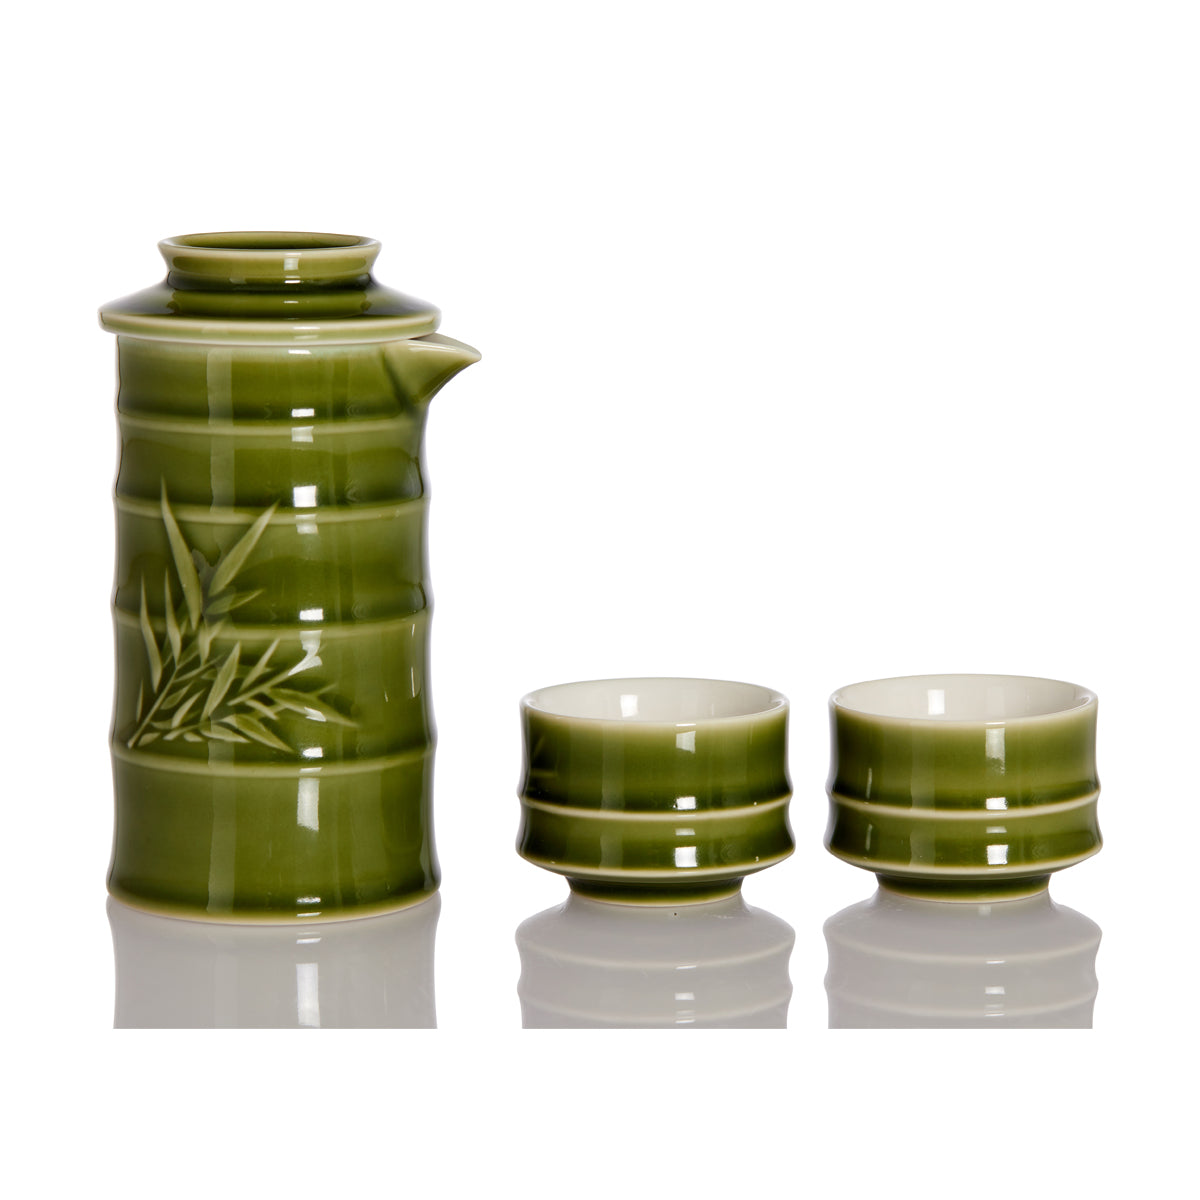 Bamboo Kung Fu Tea Set - 1 Pot with 2 Cups, Ceramics -2